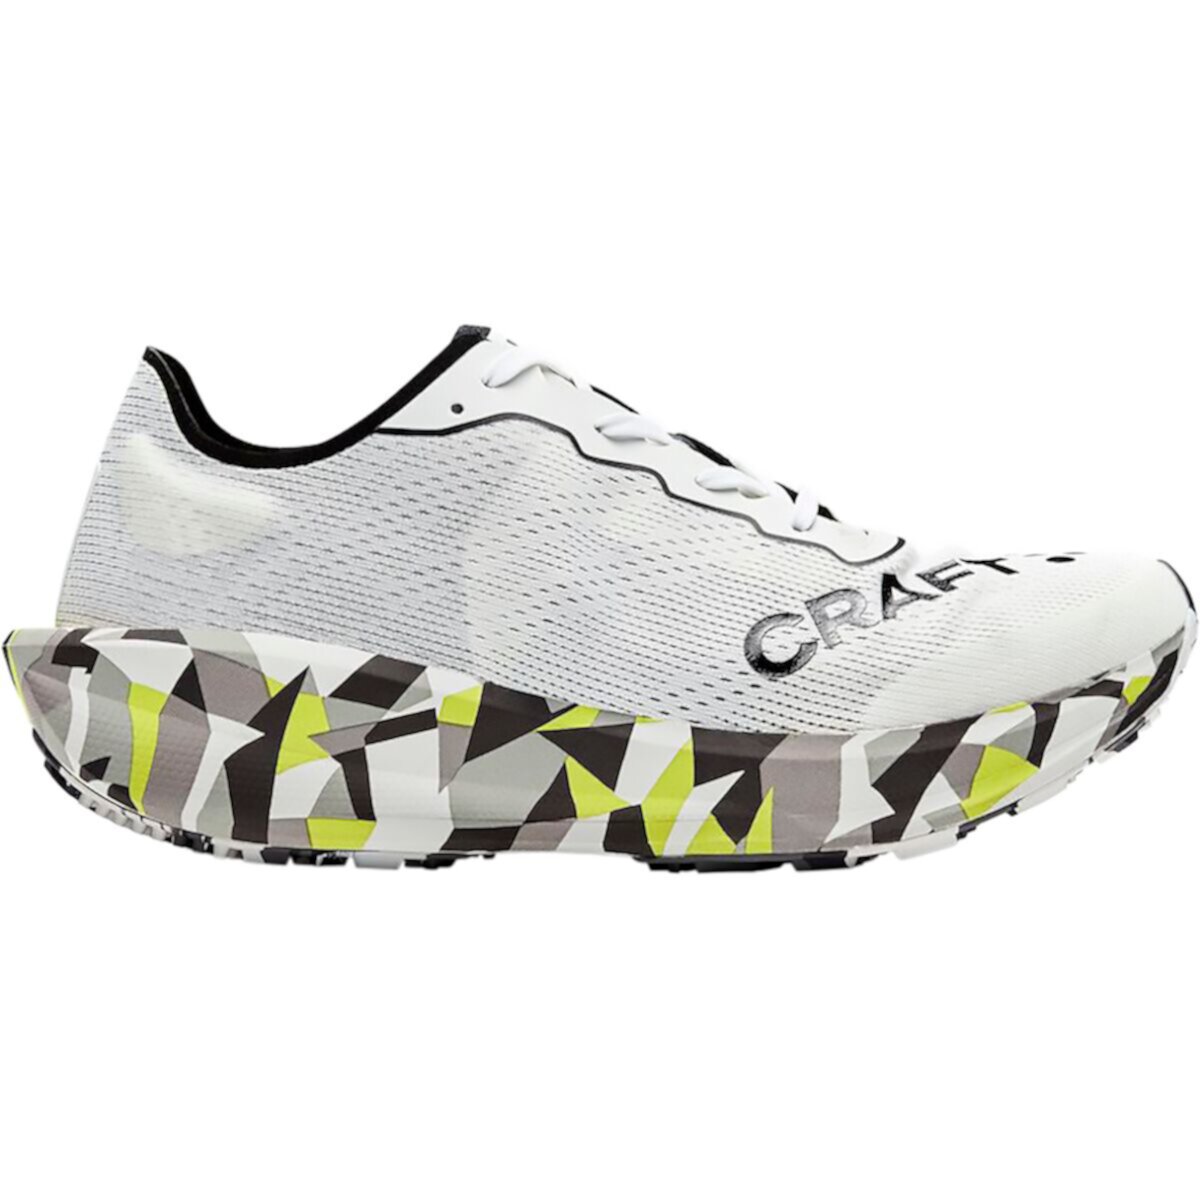 Беговые кроссовки Craft CTM Ultra Carbon 2 для мужчин Craft